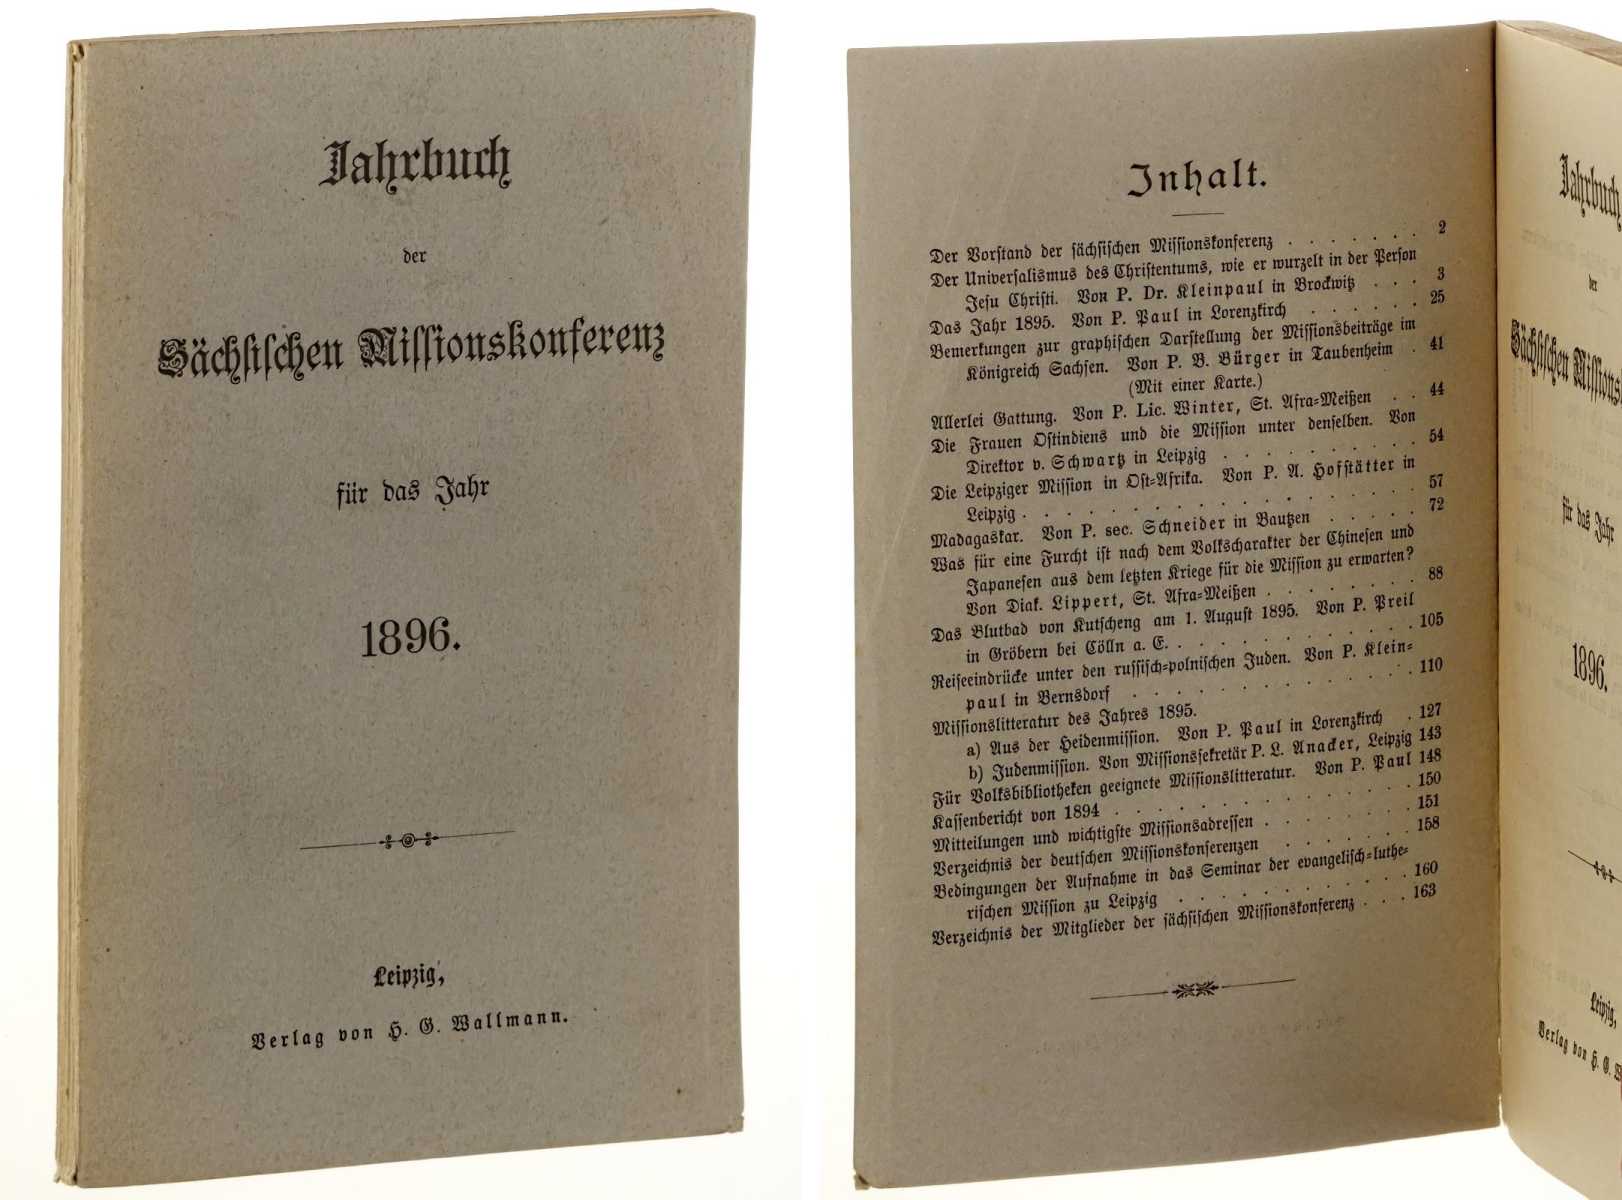   Jahrbuch der Sächsischen Missionskonferenz für das Jahr 1896. 